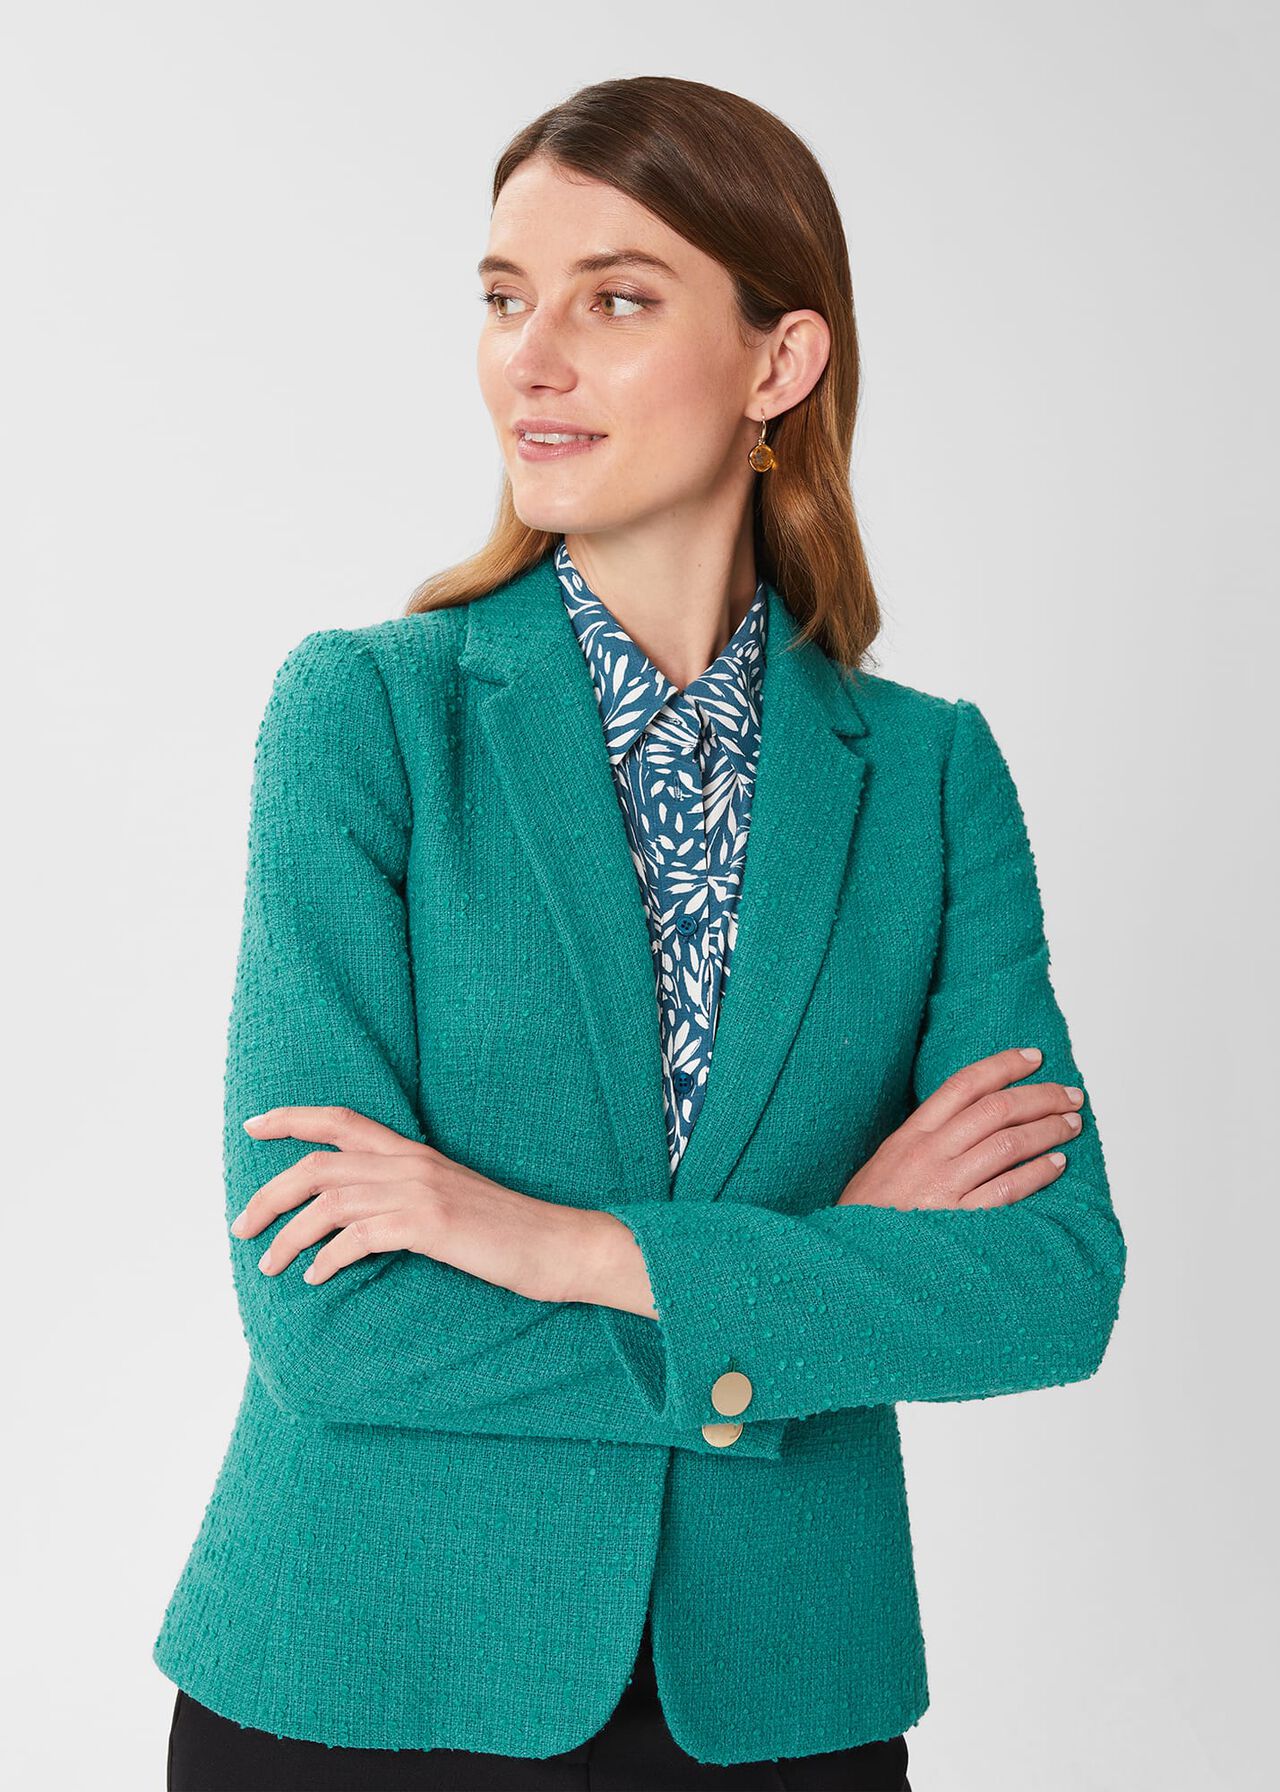 Amara Textured Jacket, Ocean Green, hi-res